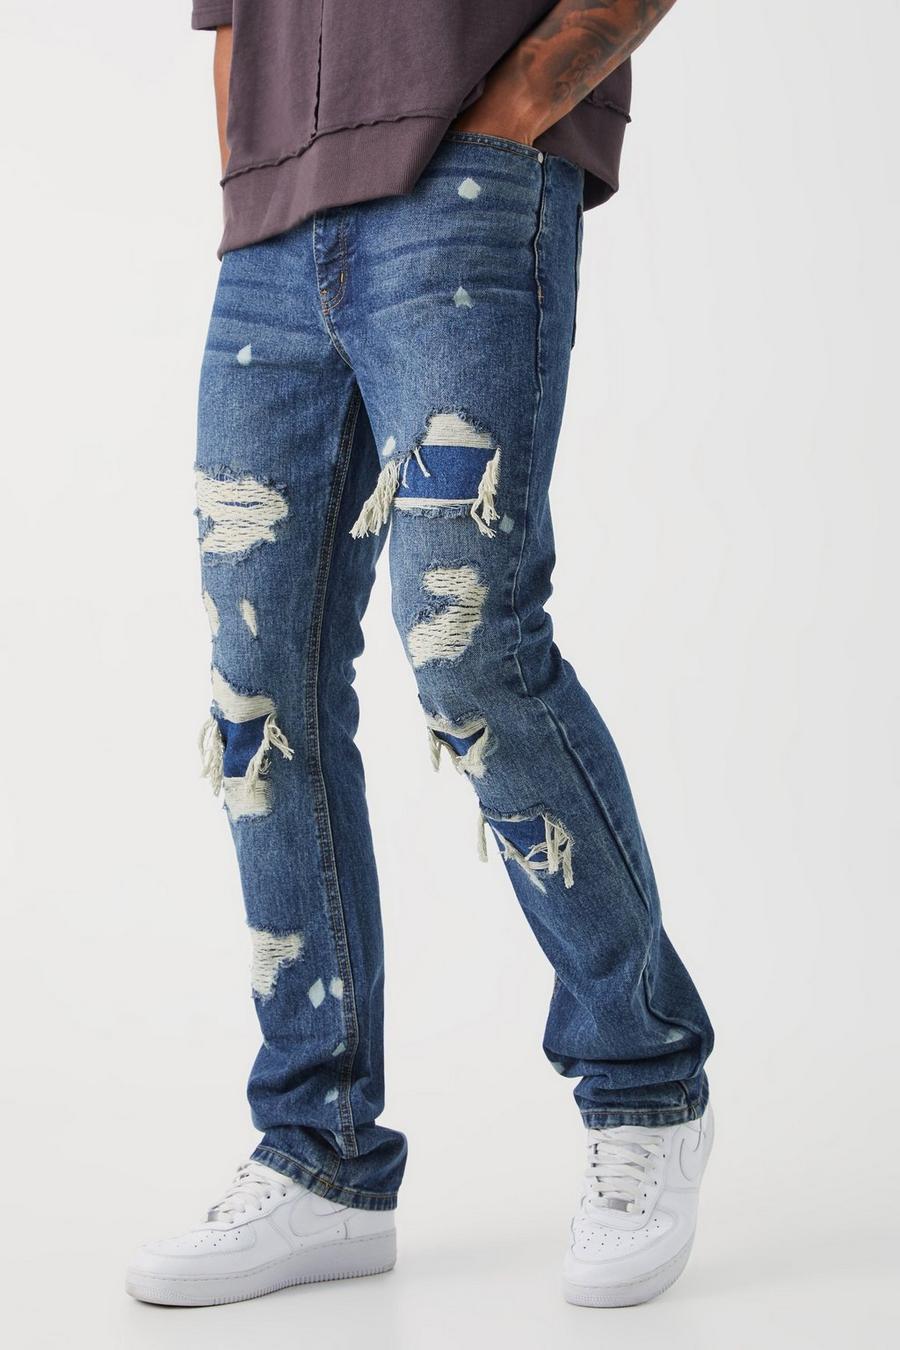 Jeans Tall Slim Fit in denim rigido candeggiati con strappi & rattoppi, Ice blue